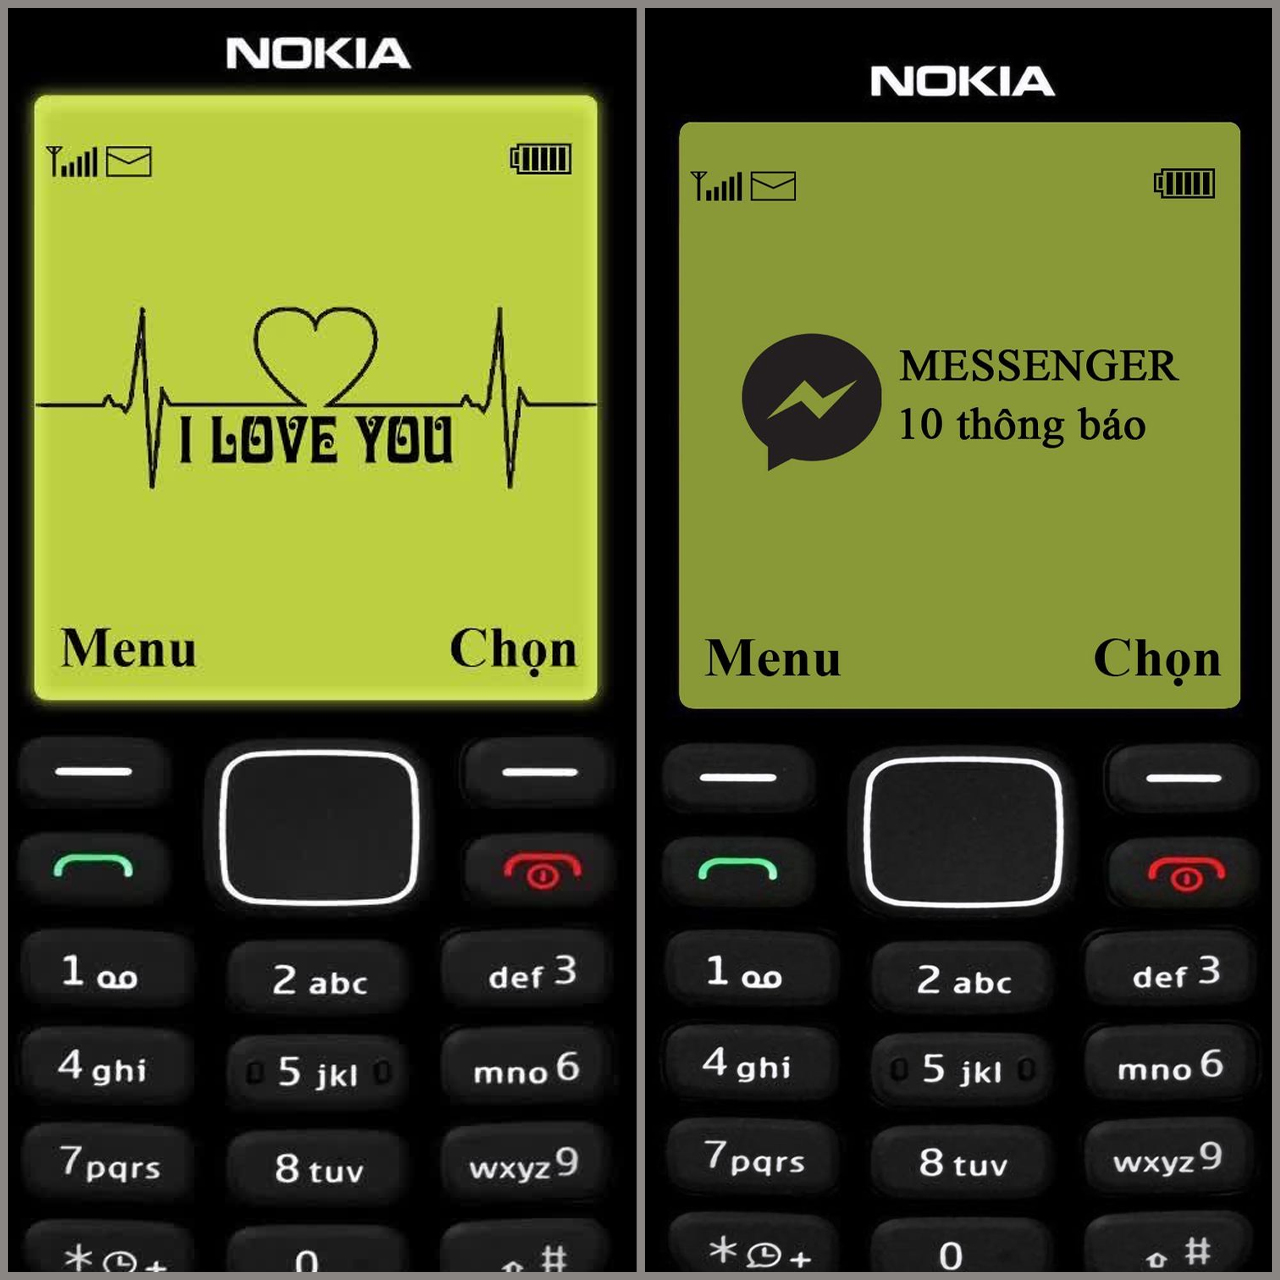 Tổng hợp Nokia 1280 Hình Nền Nokia Cho Iphone giá rẻ bán chạy tháng 32023   BeeCost